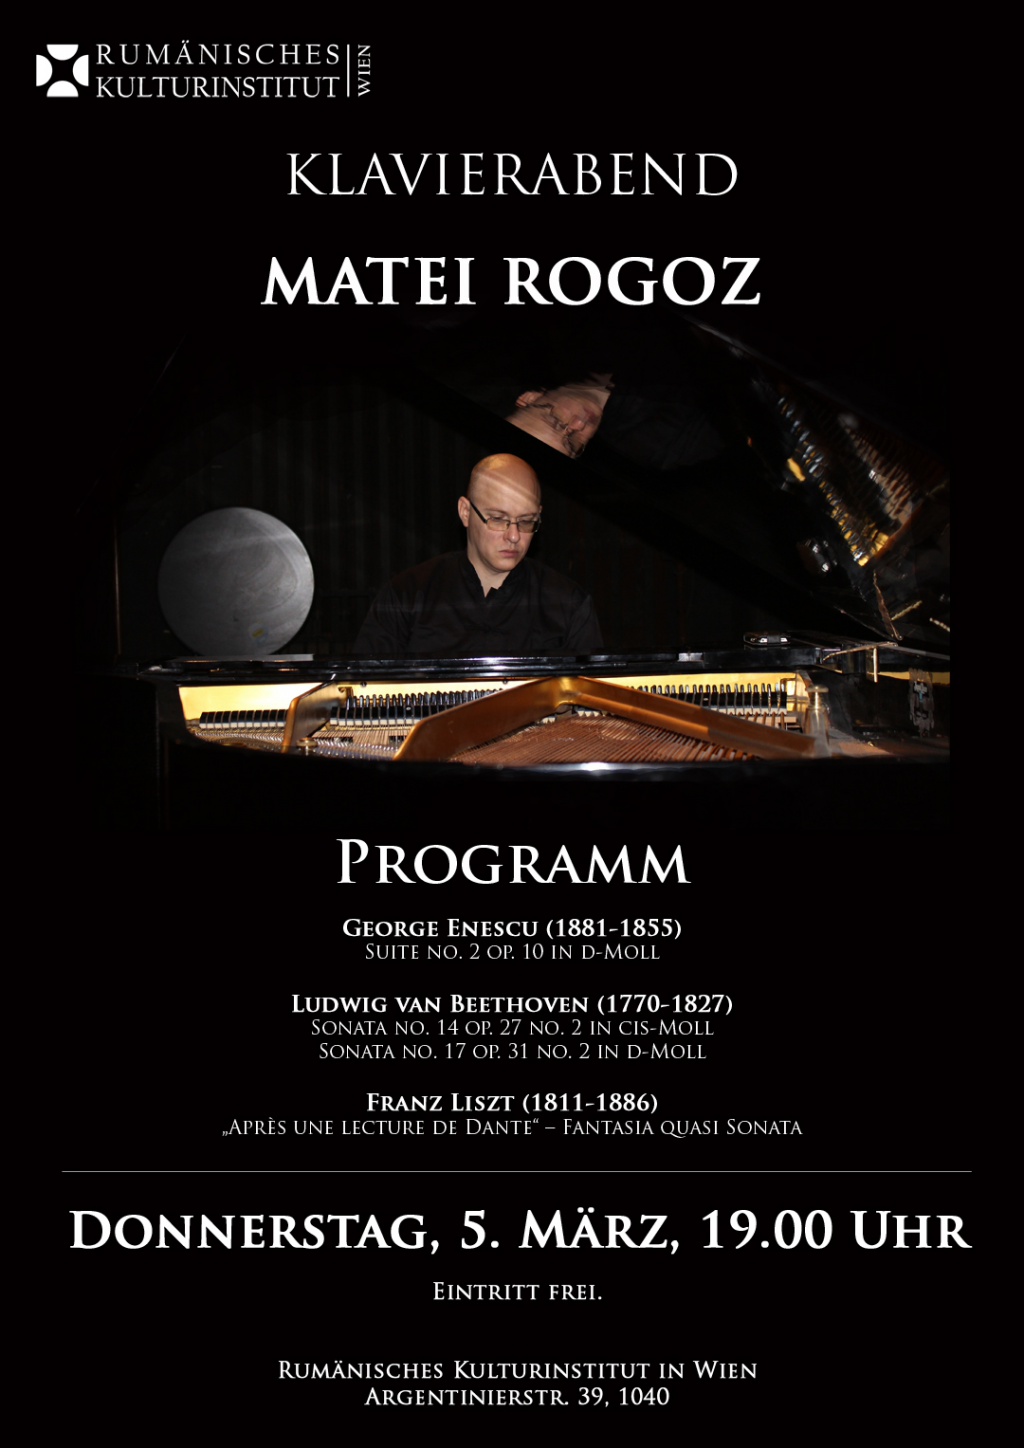 Pianistul Matei Rogoz in recital la Institutul Cultural Roman de la Viena